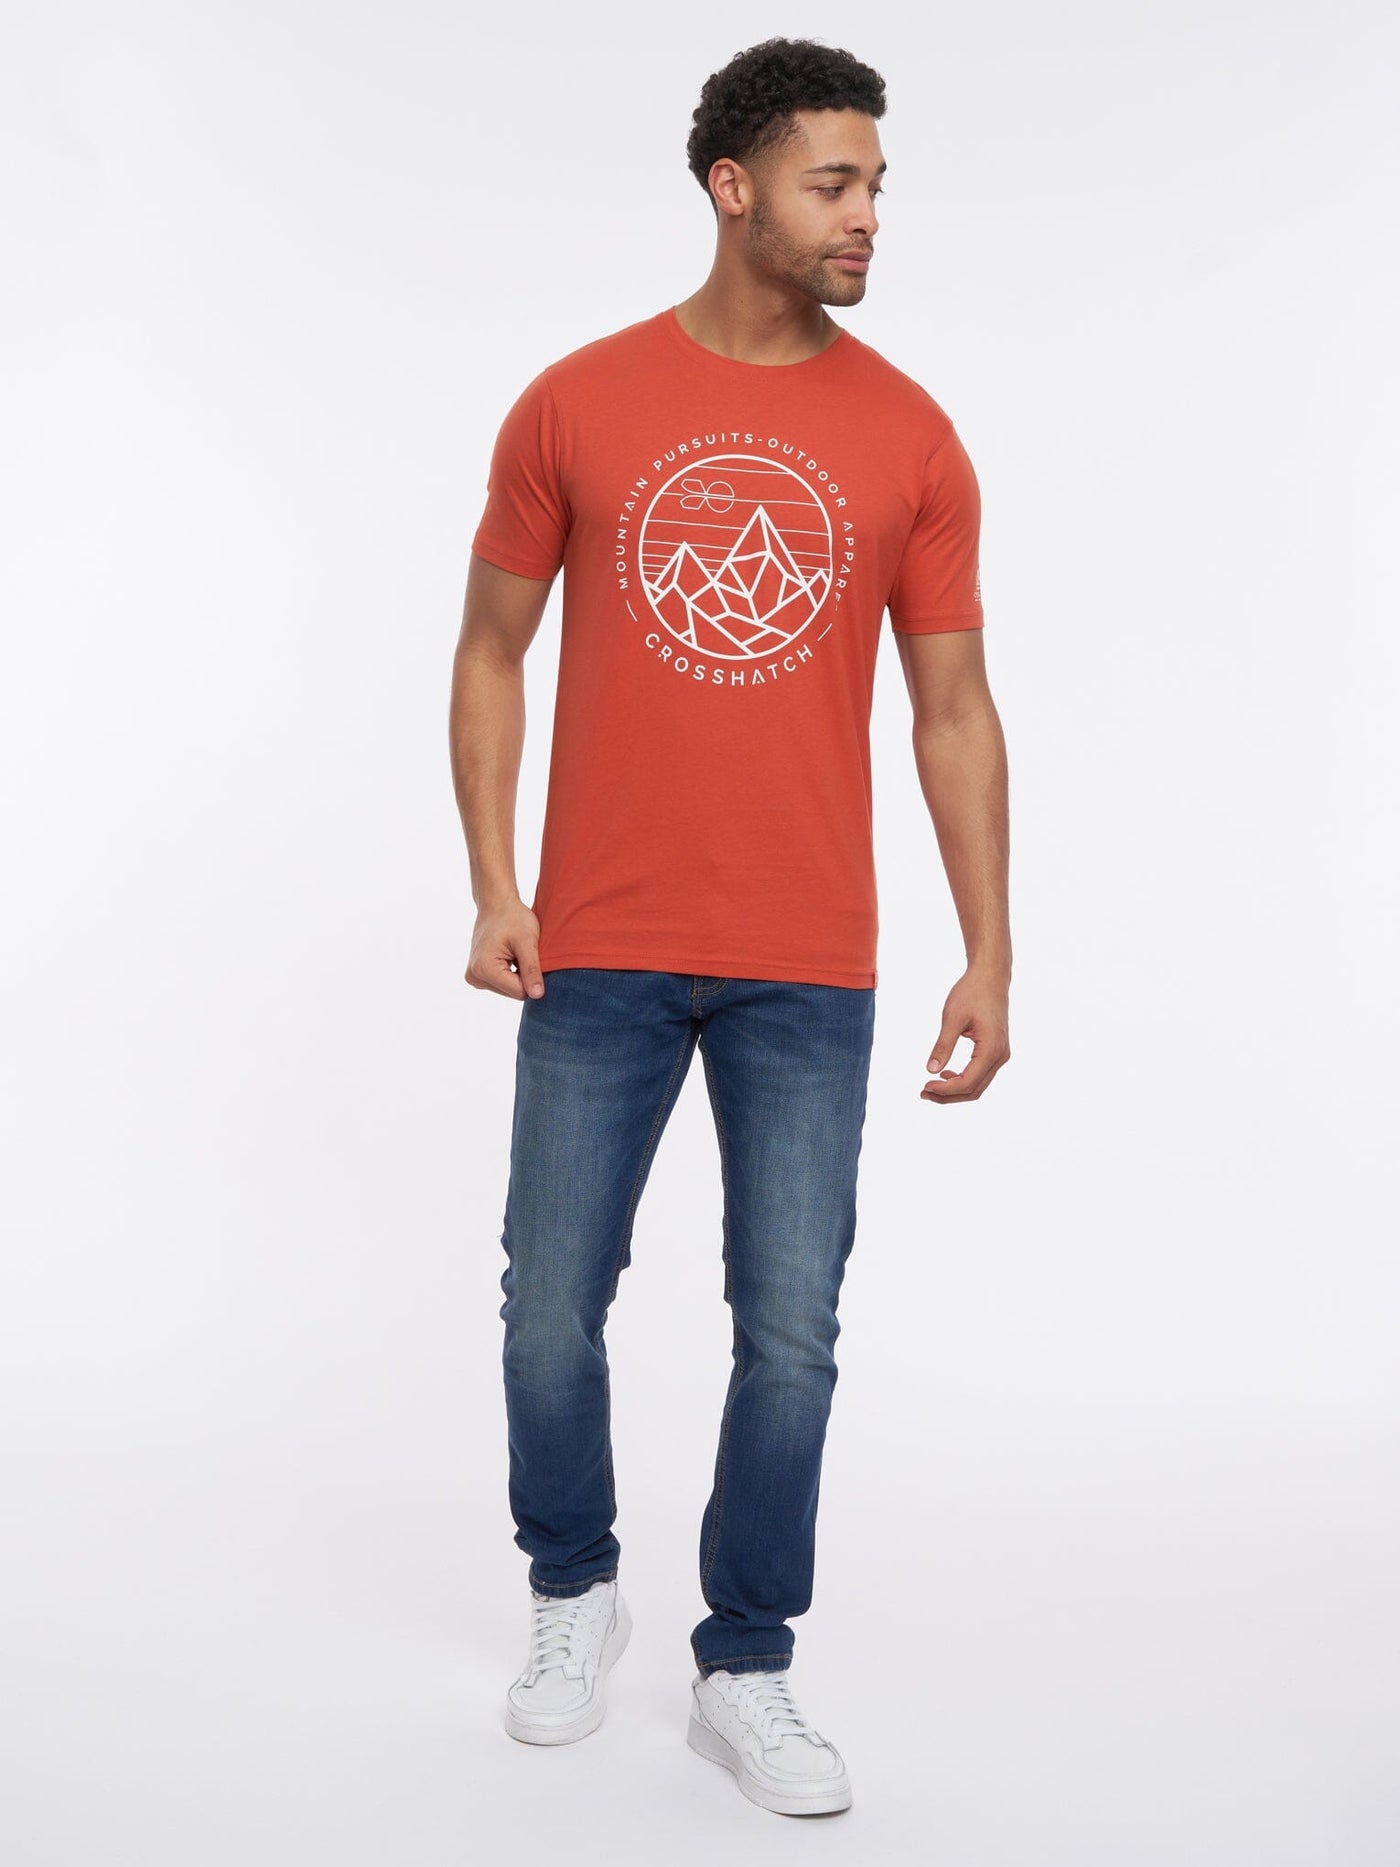 Talung T-Shirt Red Marl